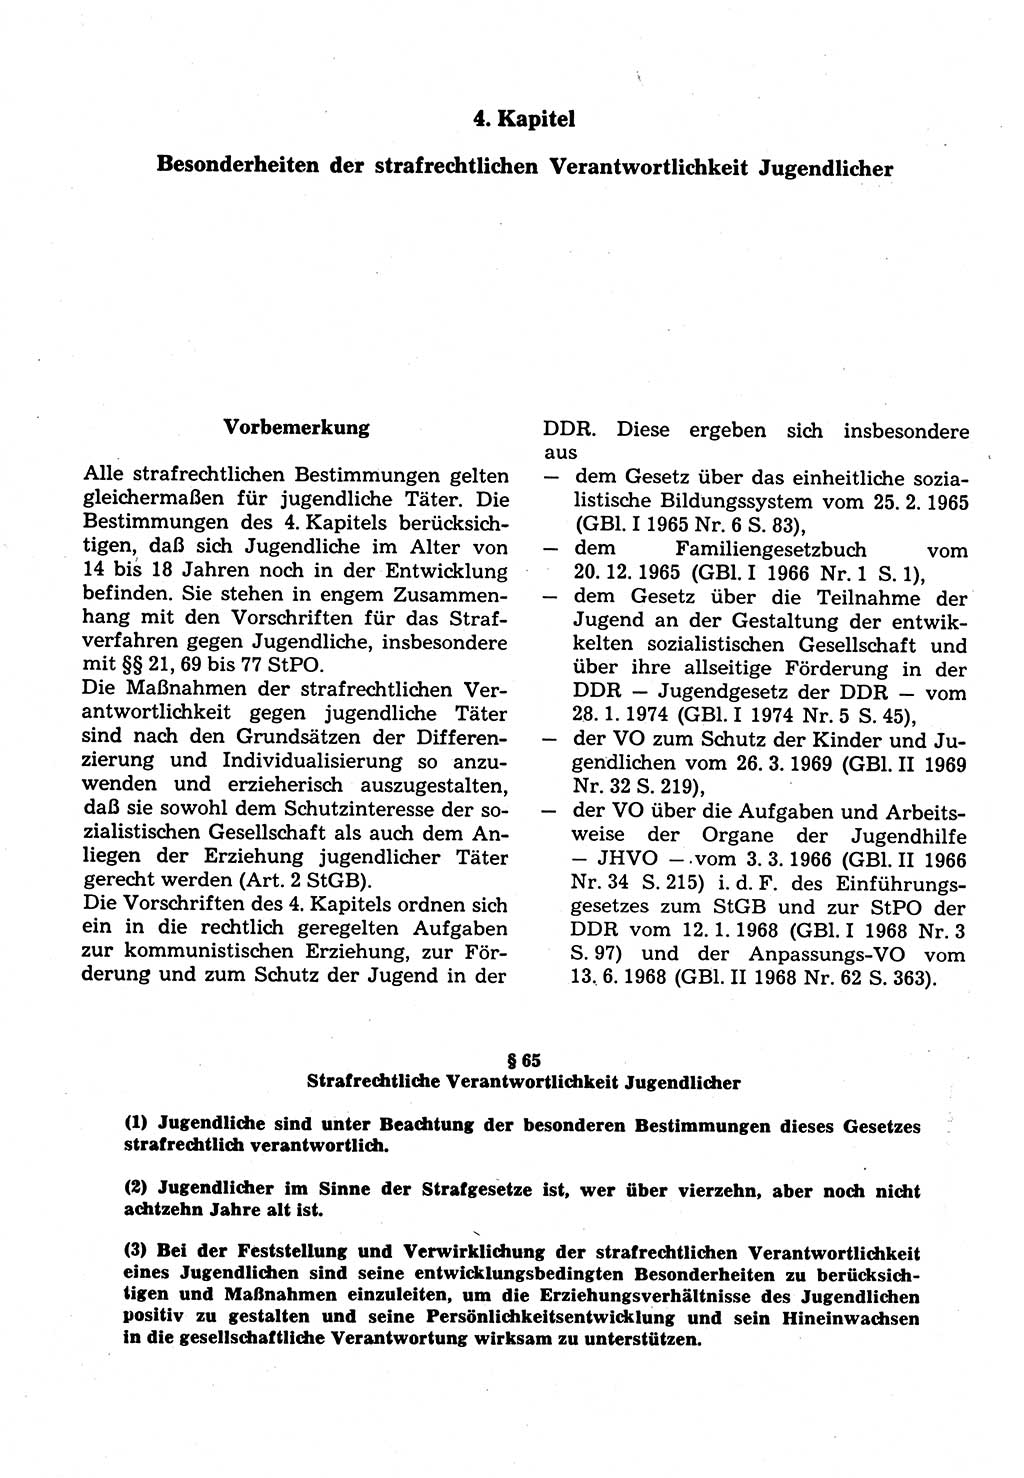 Strafrecht der Deutschen Demokratischen Republik (DDR), Kommentar zum Strafgesetzbuch (StGB) 1987, Seite 216 (Strafr. DDR Komm. StGB 1987, S. 216)